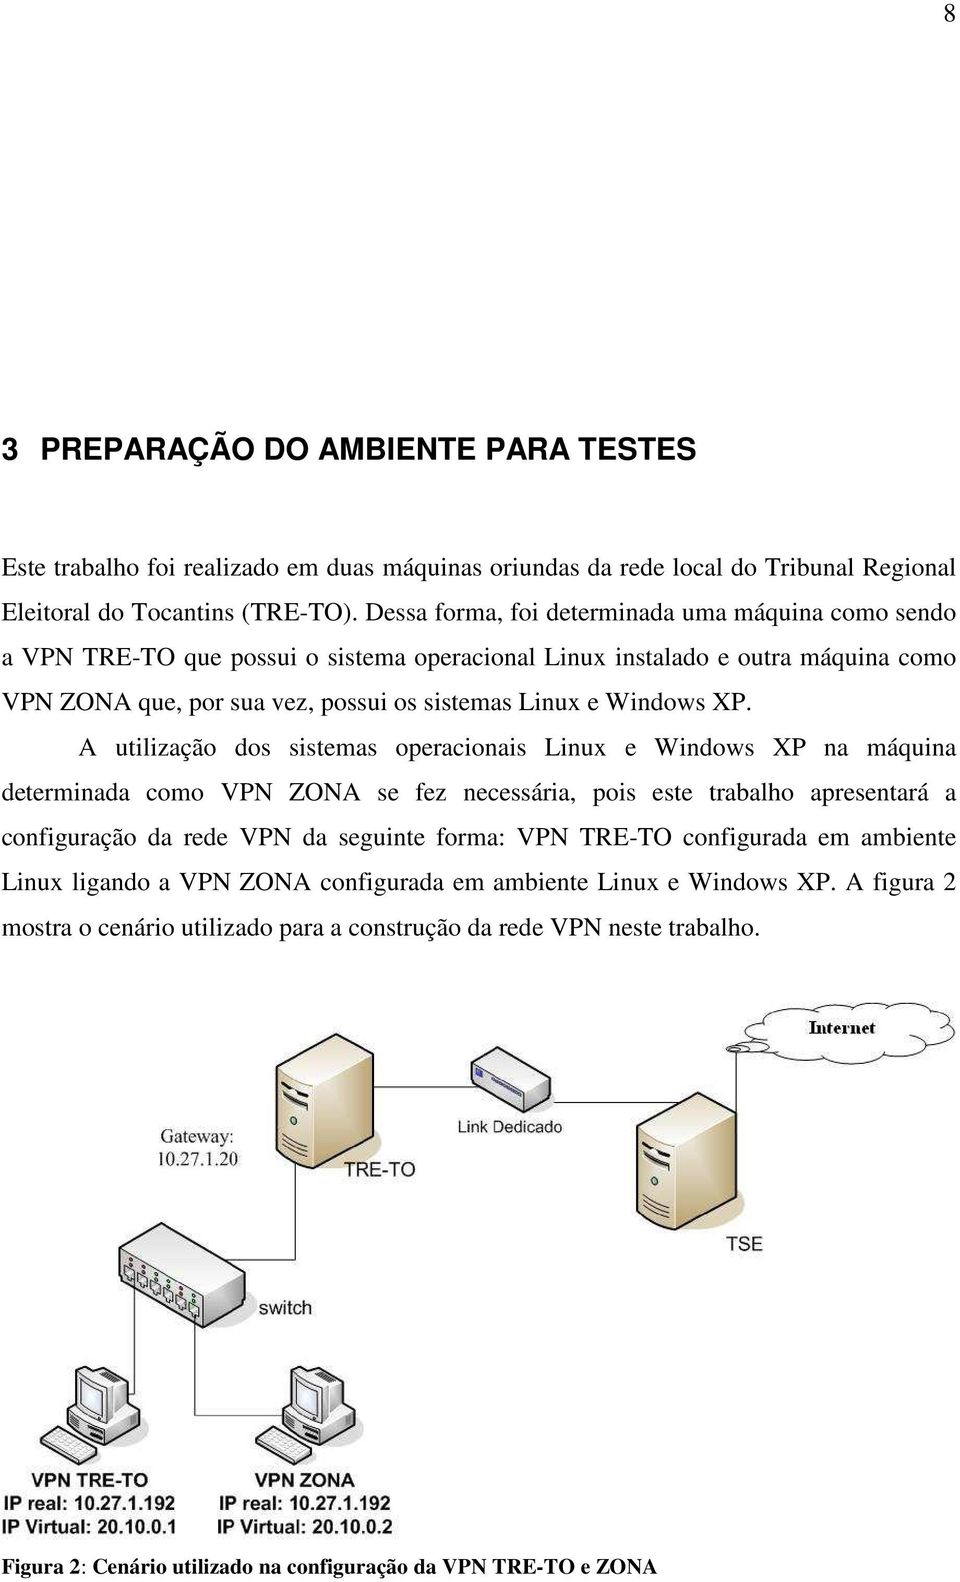 A utilização dos sistemas operacionais Linux e Windows XP na máquina determinada como VPN ZONA se fez necessária, pois este trabalho apresentará a configuração da rede VPN da seguinte forma: VPN